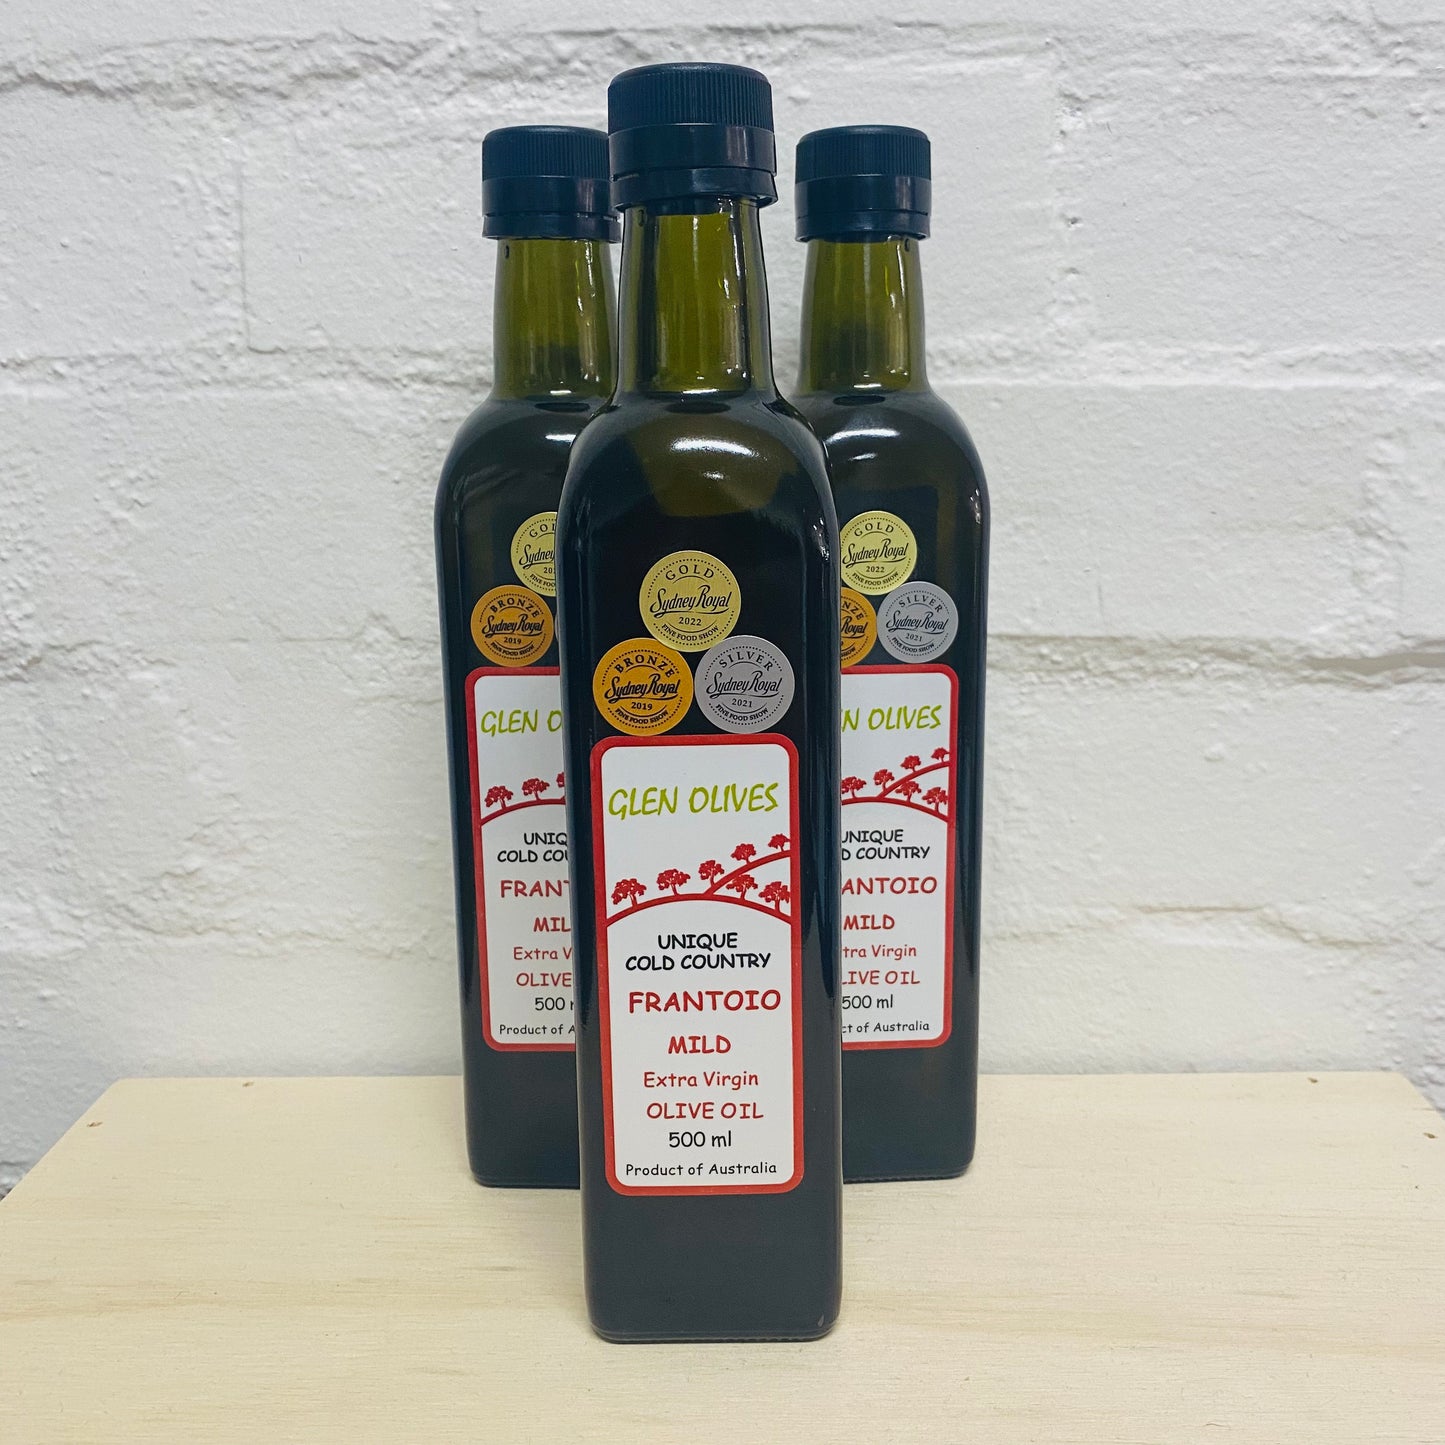 Olive Oil 500ml - 2 varieties by Glen Olives